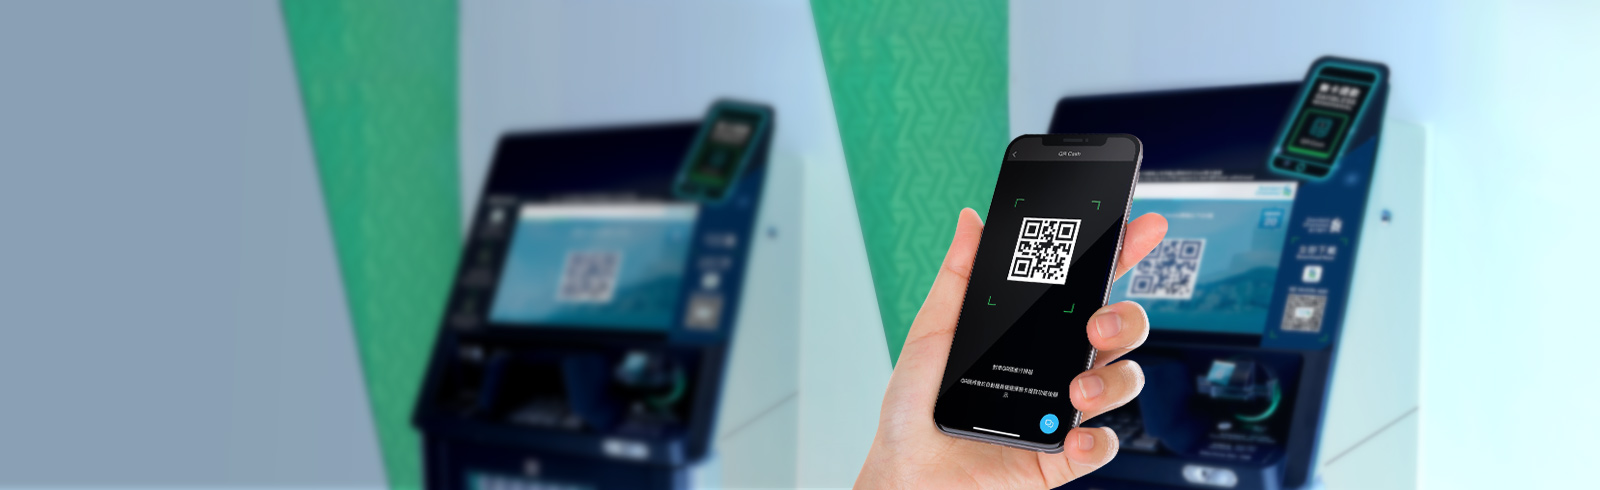 一隻手拿著手機，掃描ATM屏幕顯示的QR Cash二維碼